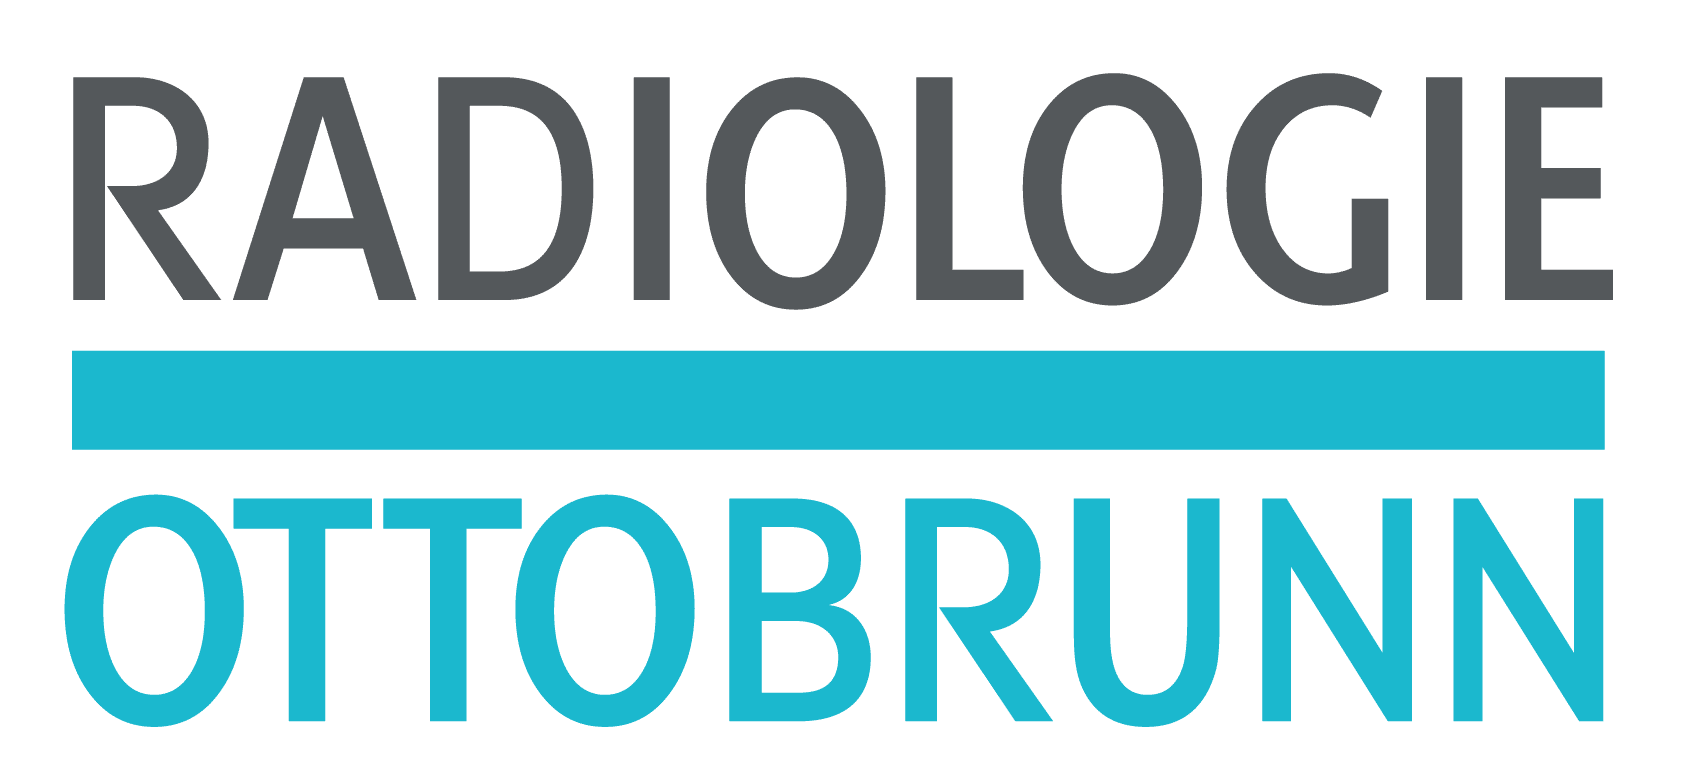 Radiologie Ottobrunn